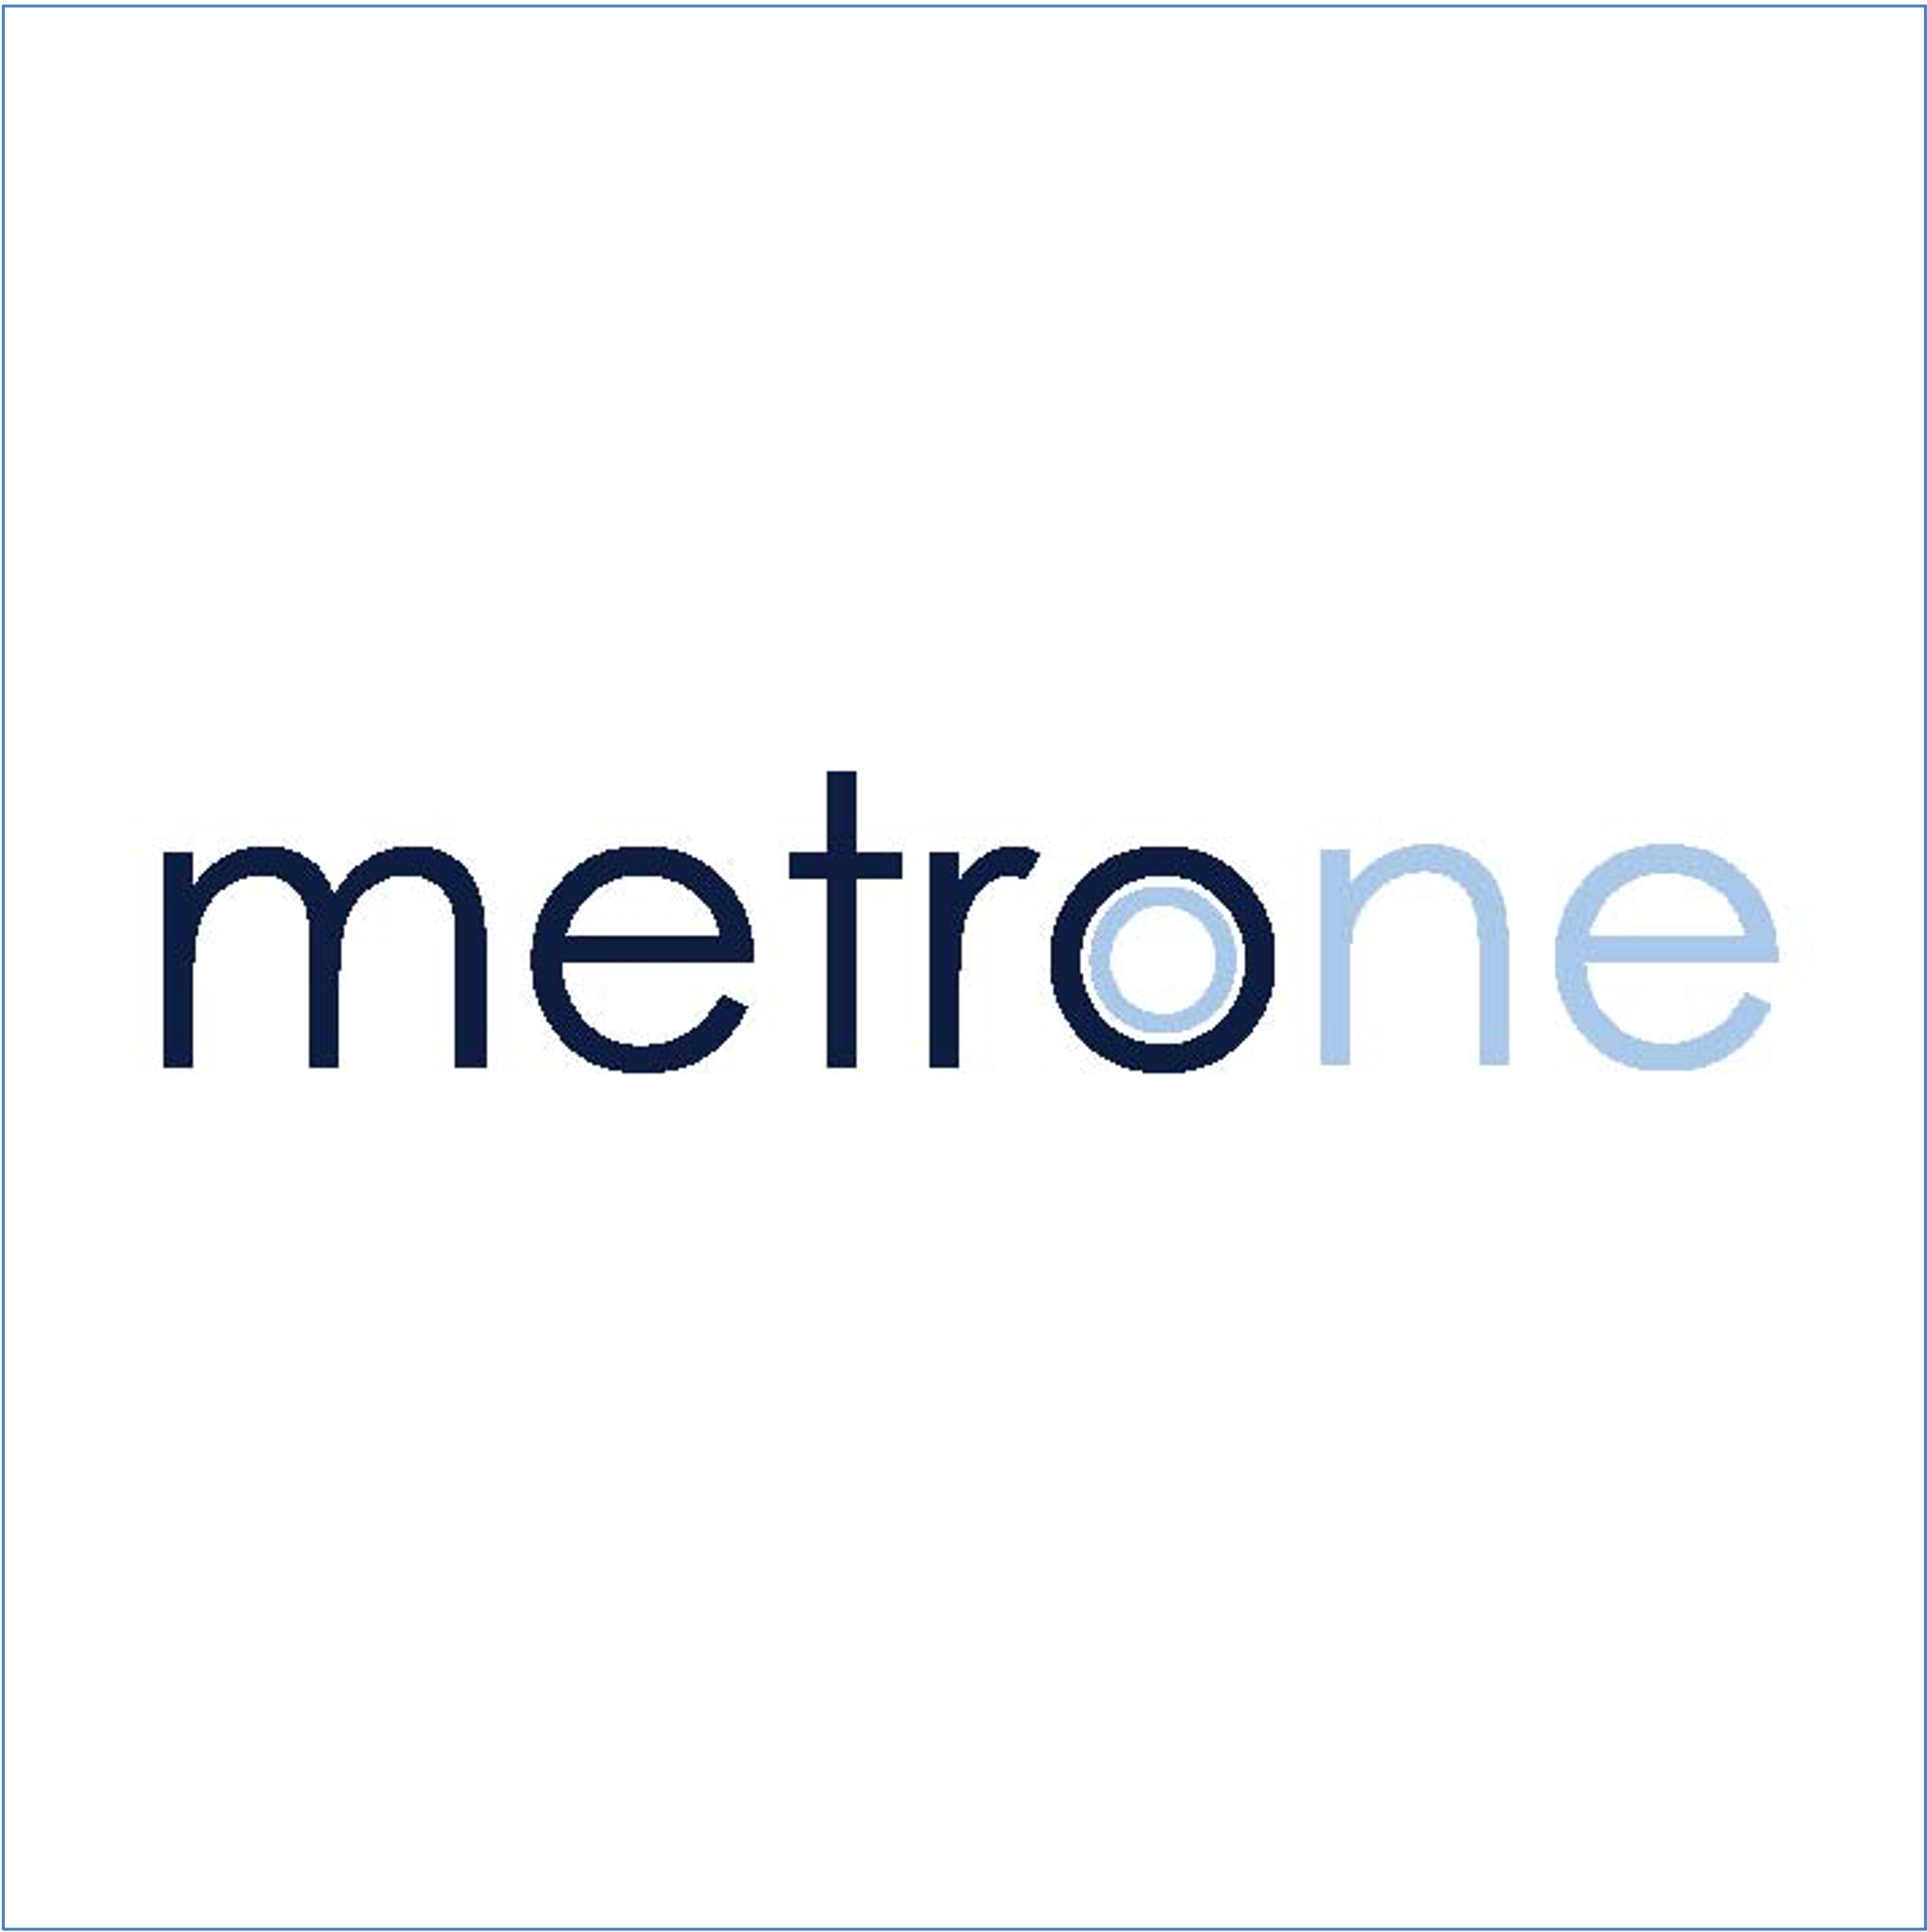 Metrone